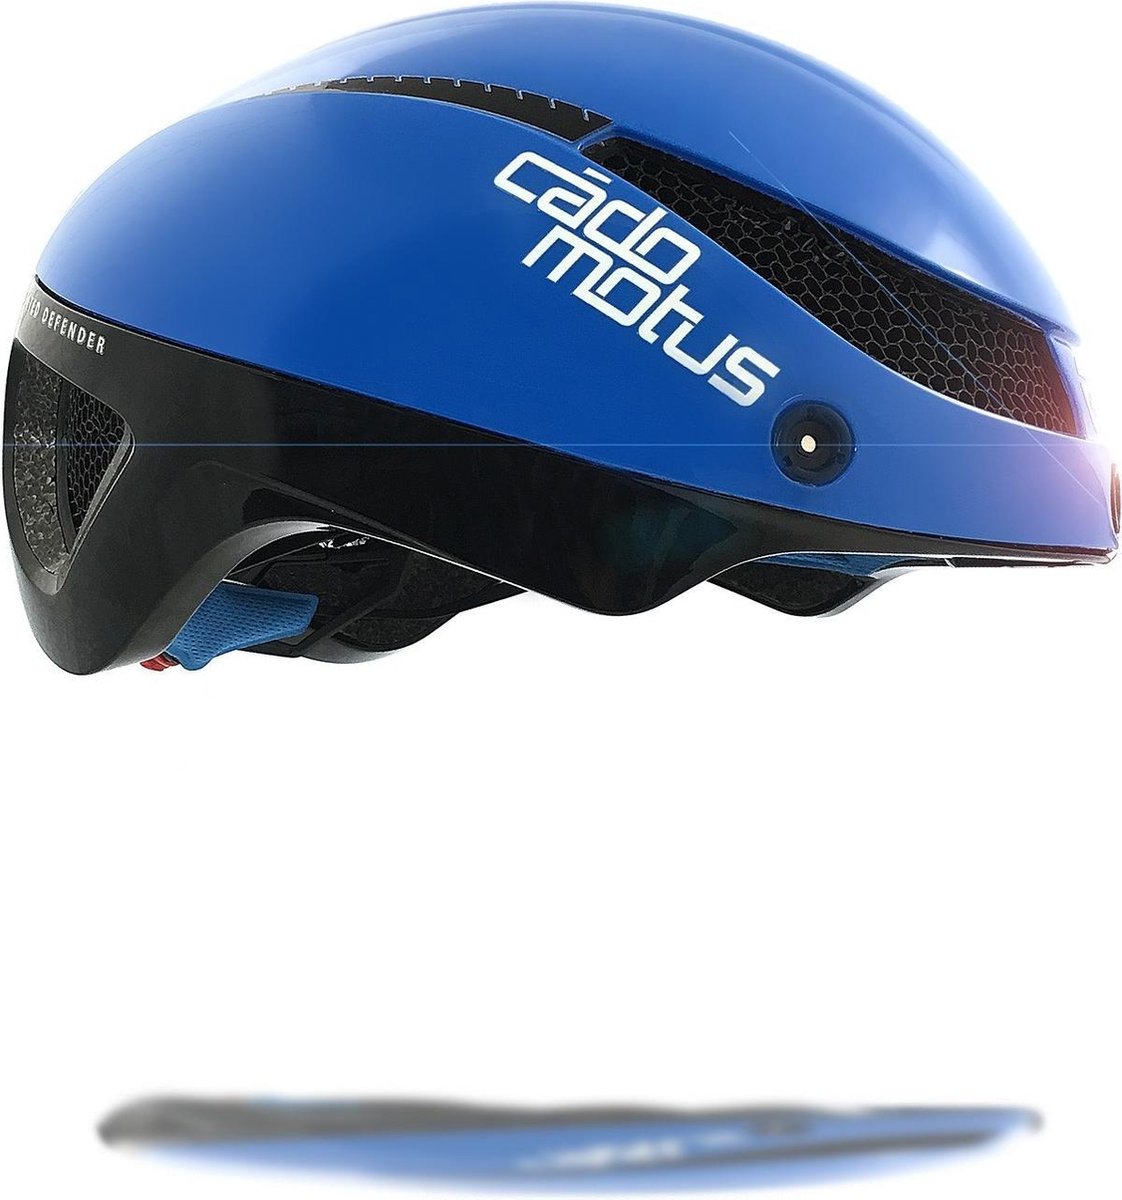 CADOMOTUS Omega Aero Helm | Professionele Aerodynamische Helm | Schaatshelm | Fietshelm | Triathlonhelm | Ultra Licht & Lage weerstand | Voor Volwassenen | Maat M (54 - 57 cm) Blauw | Vizier Optioneel